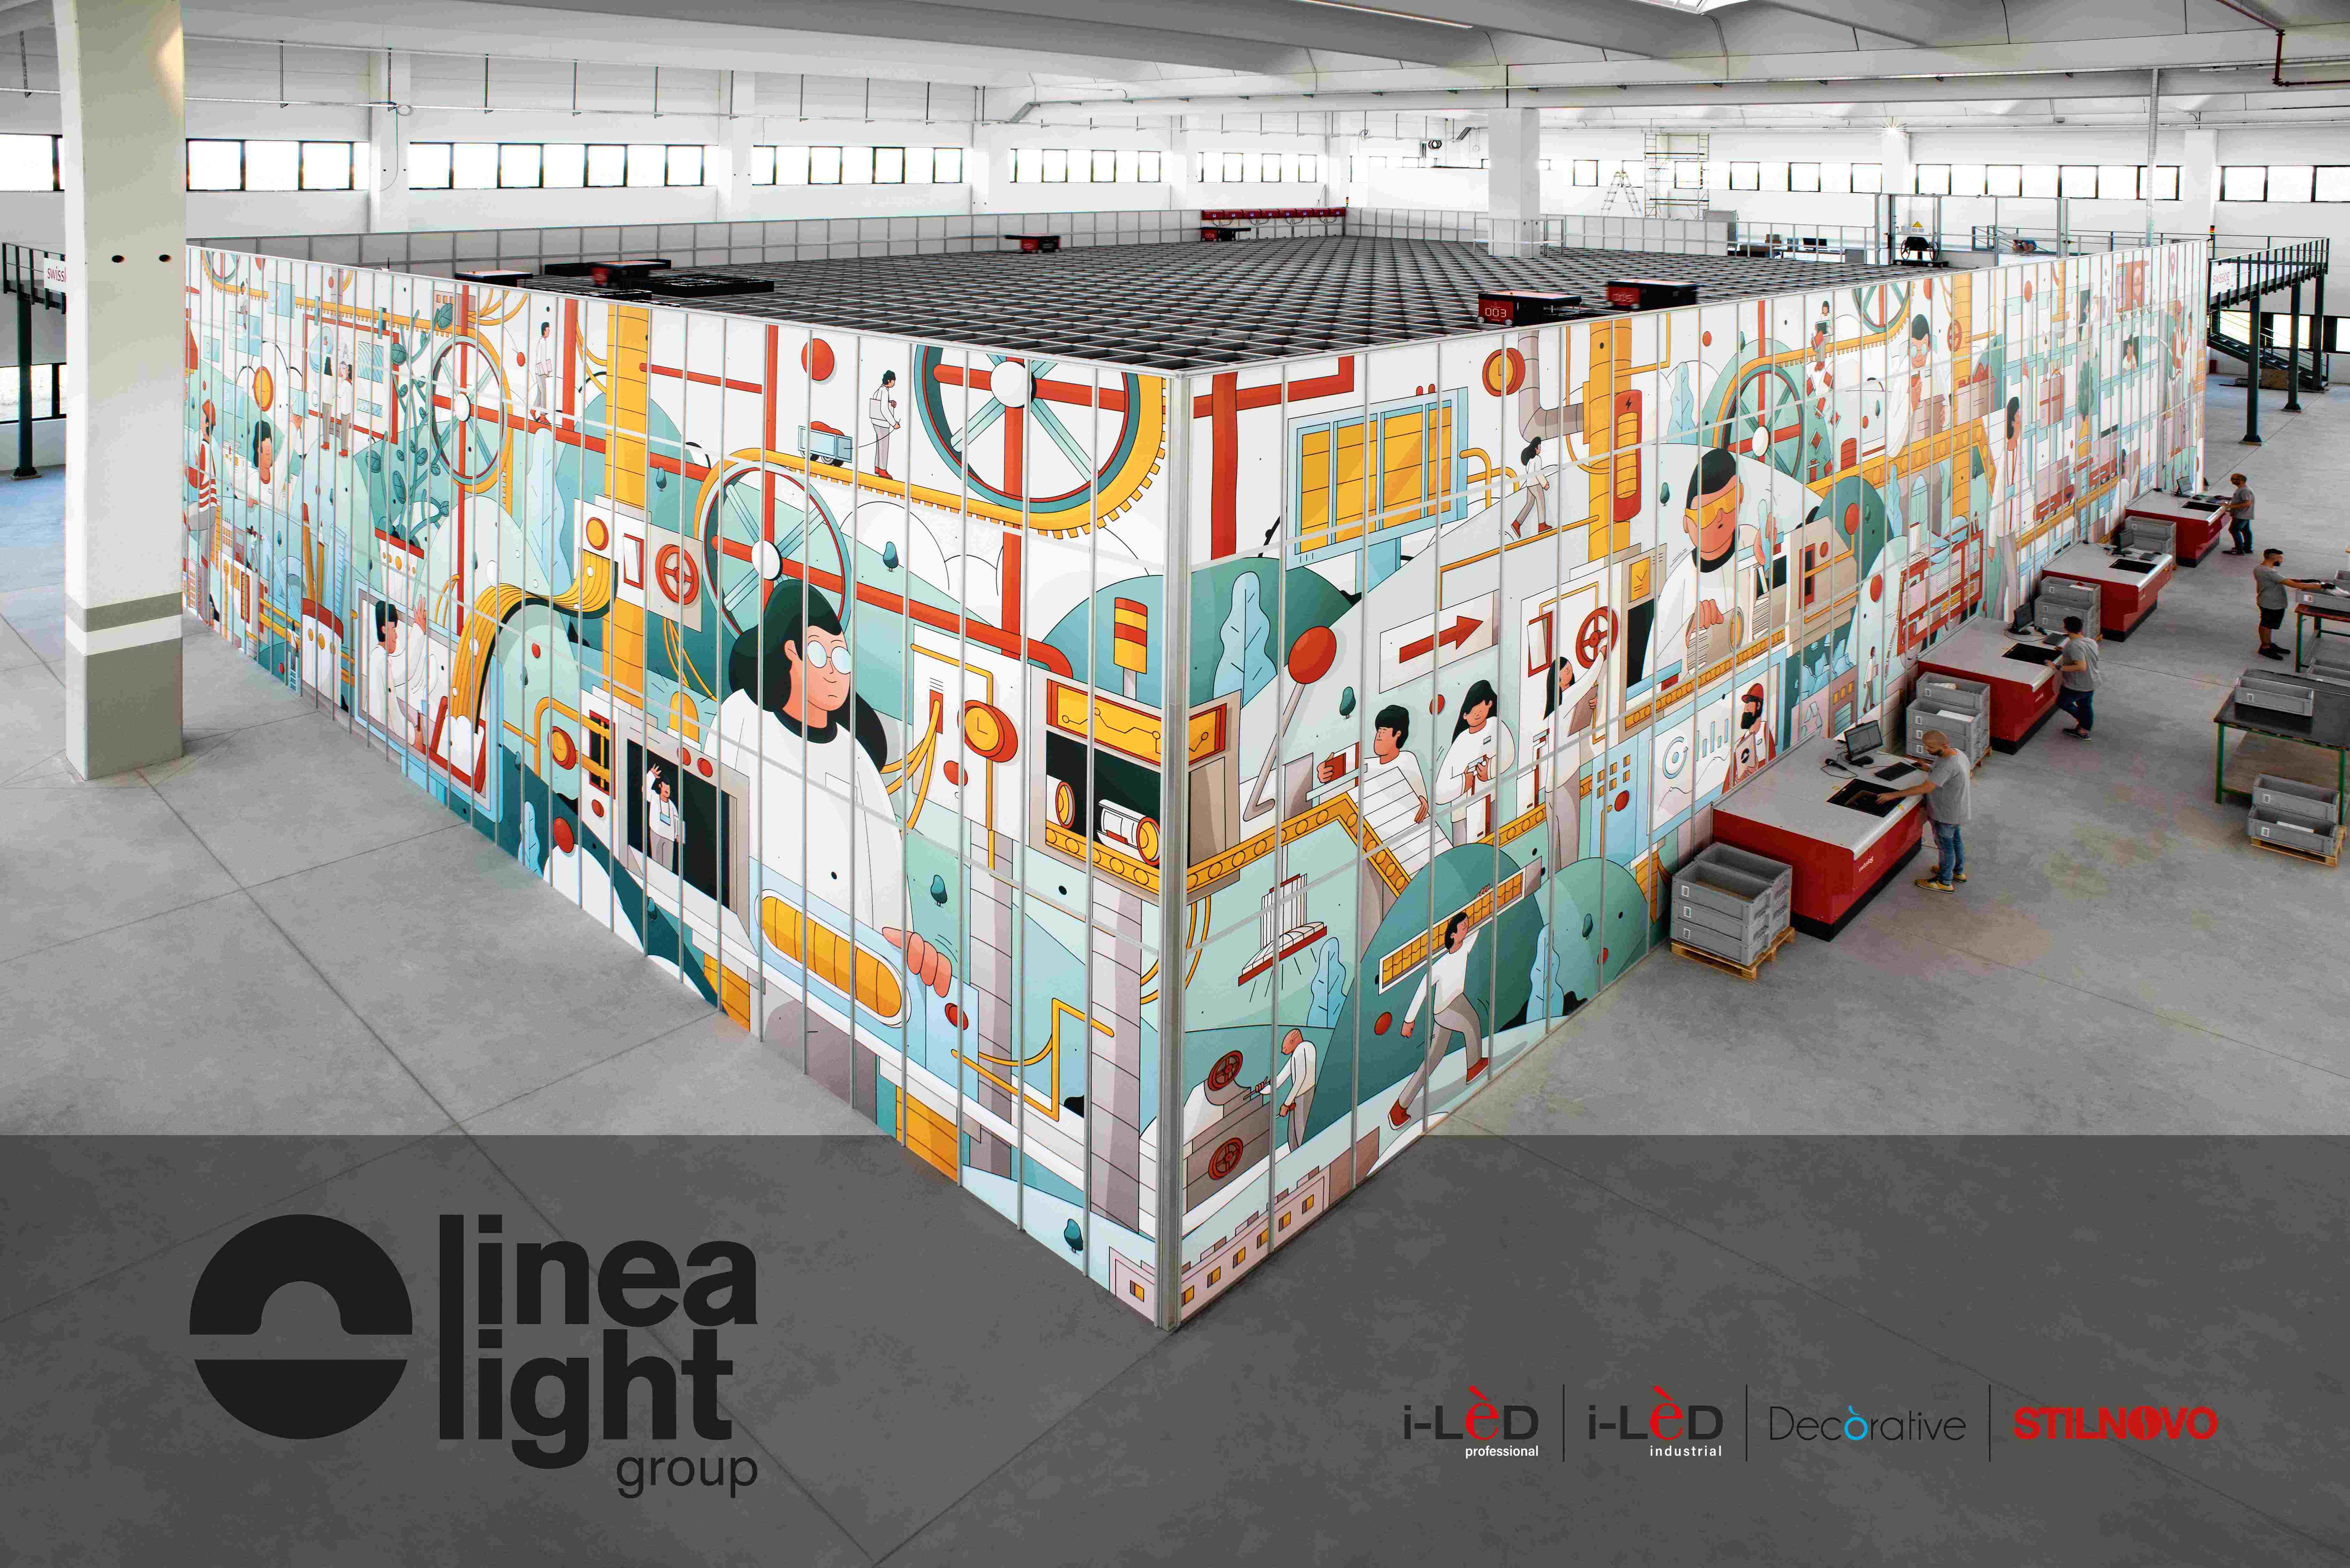 linea light group chooses infor